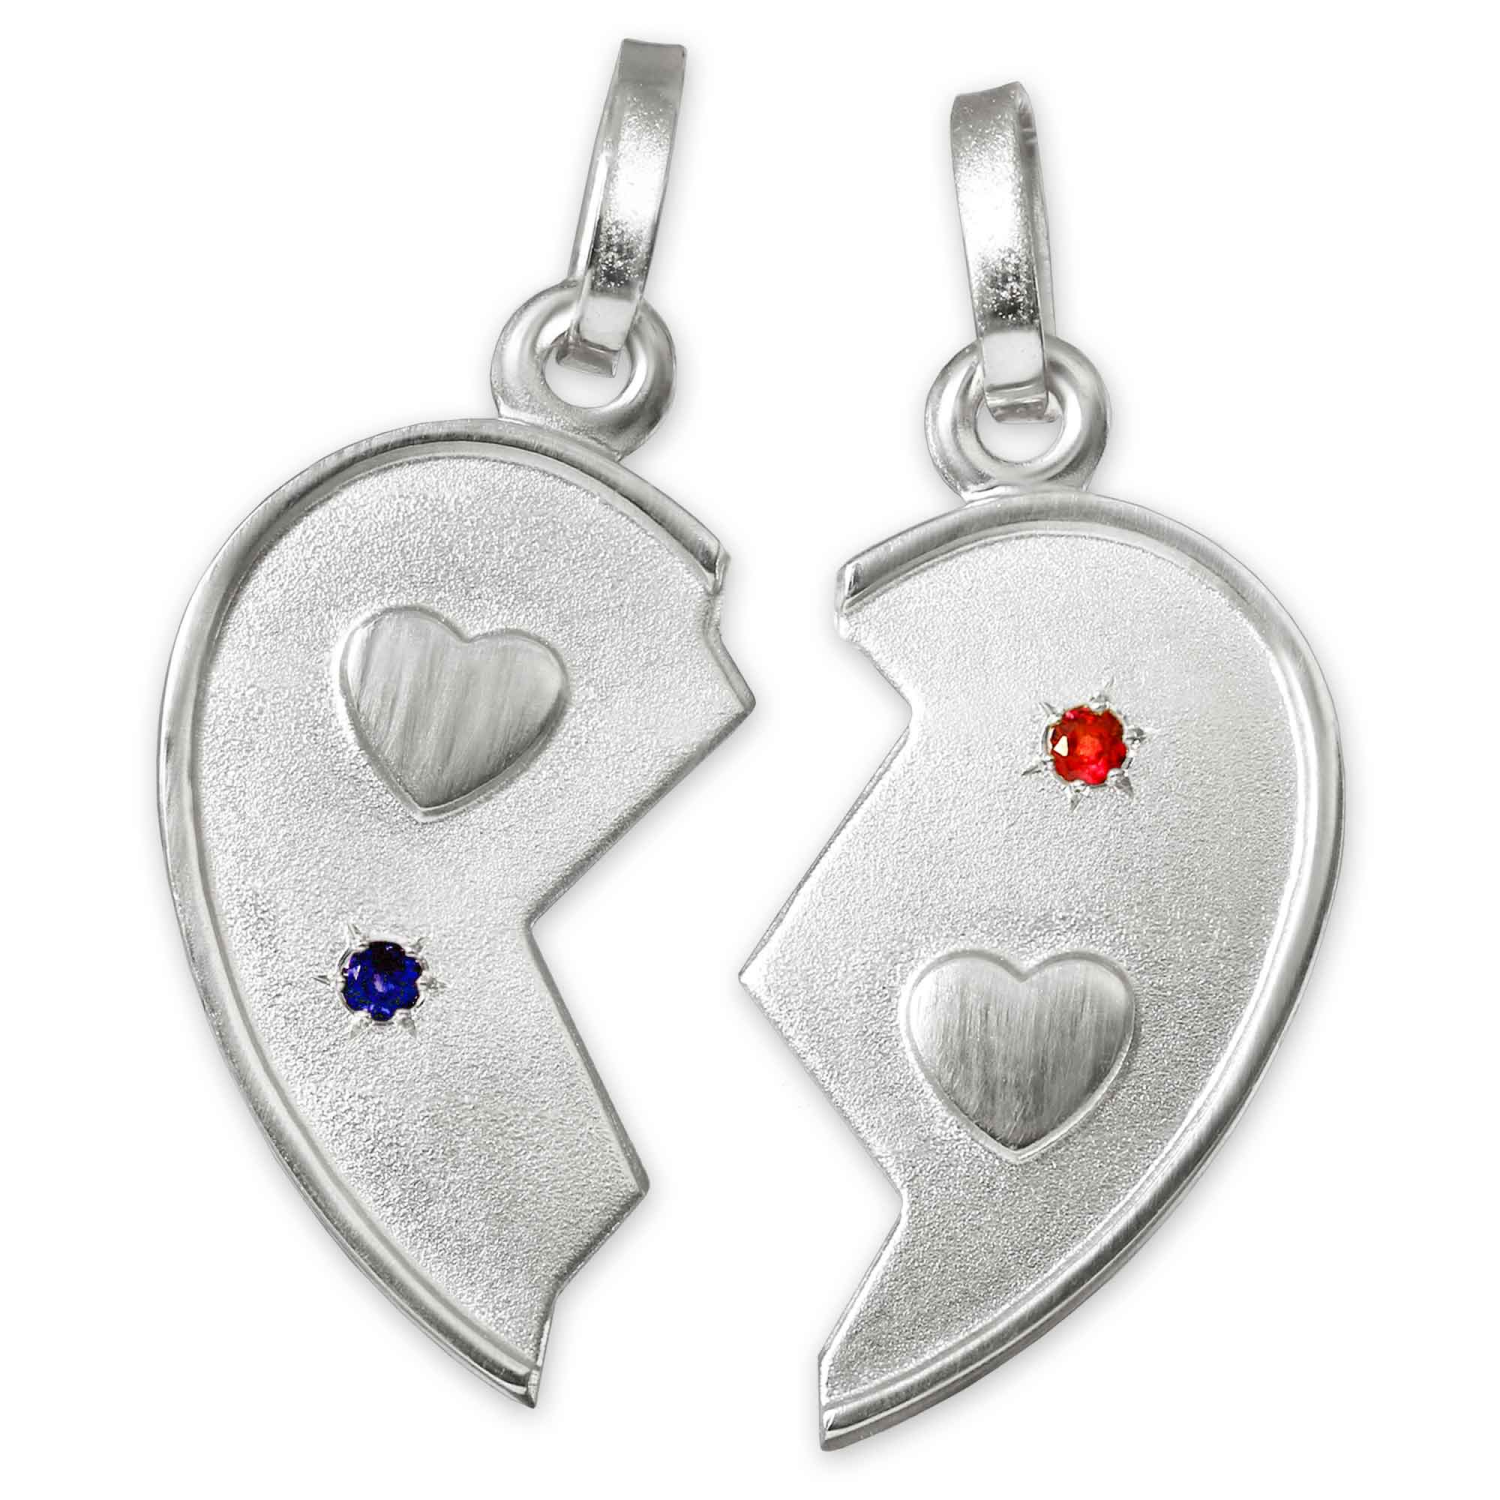 2 Silberne Partneranhänger als geteiltes Herz mit Steinen safirblau und rubinrot STERLING SILBER 925